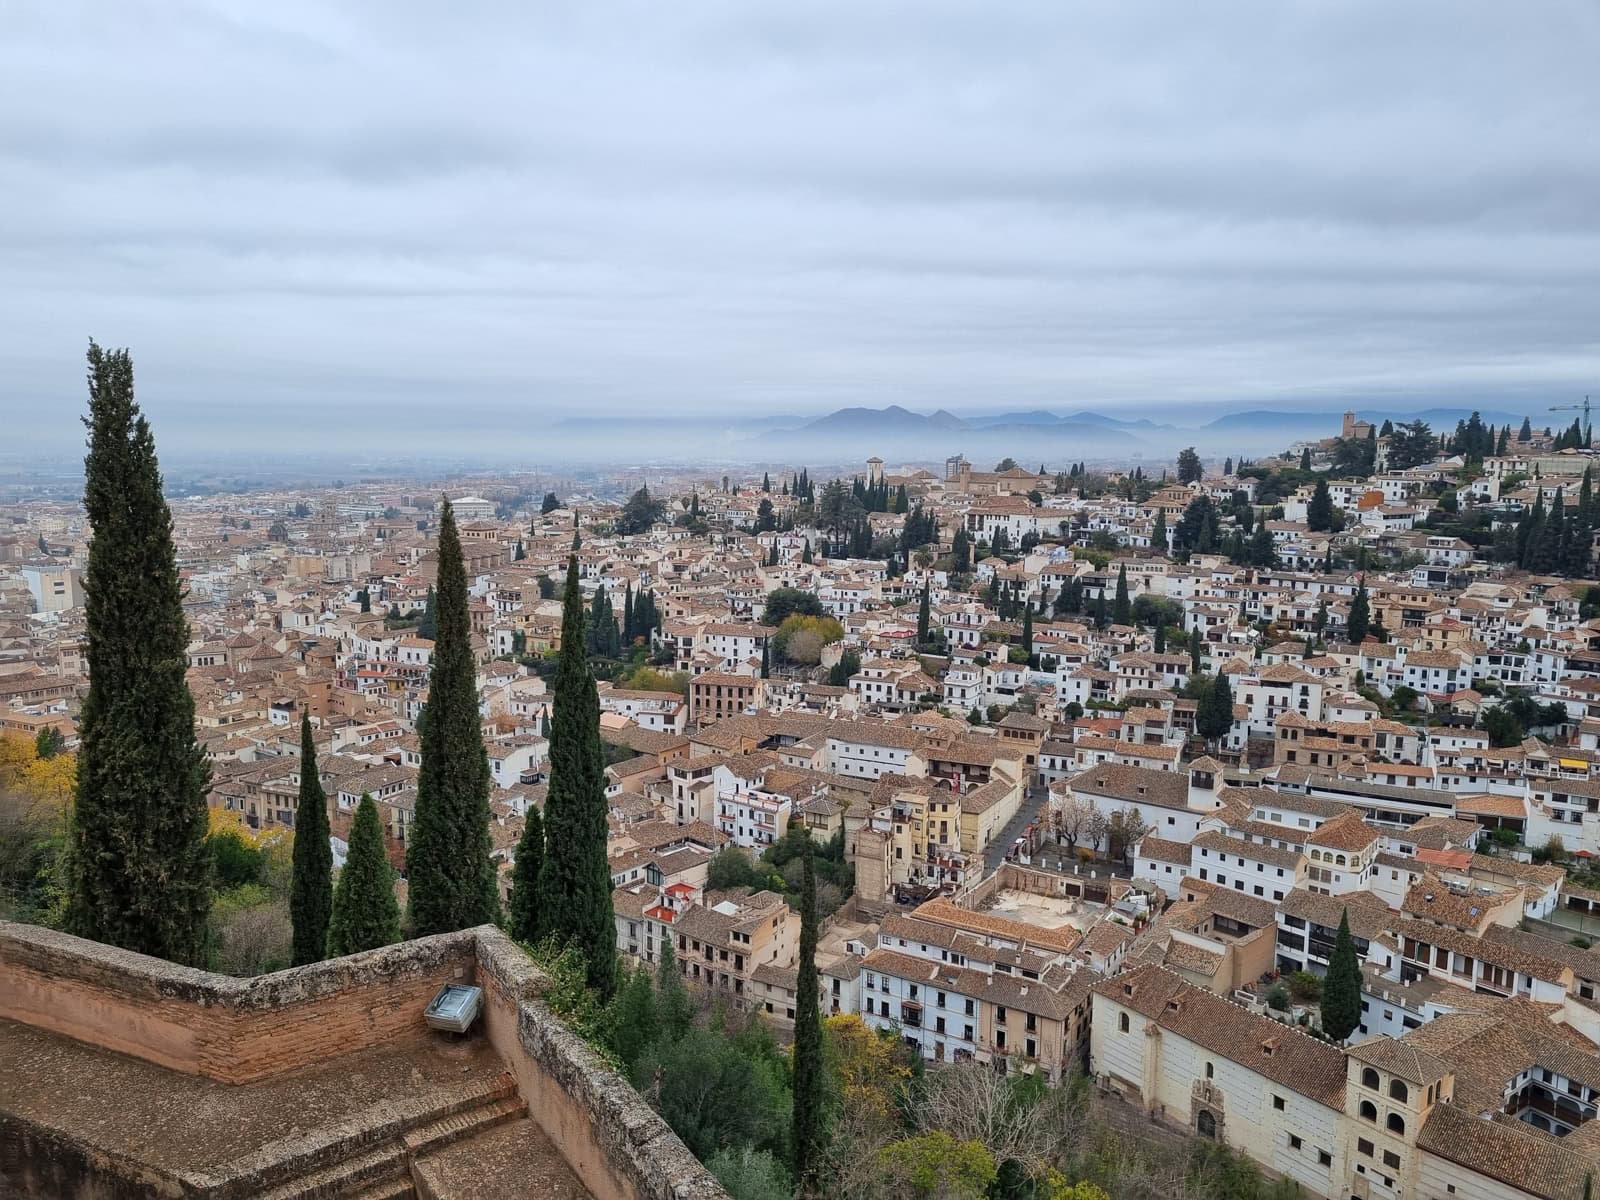 Visite España en invierno y vea la Alhambra y otros sitios sin las multitudes del verano.